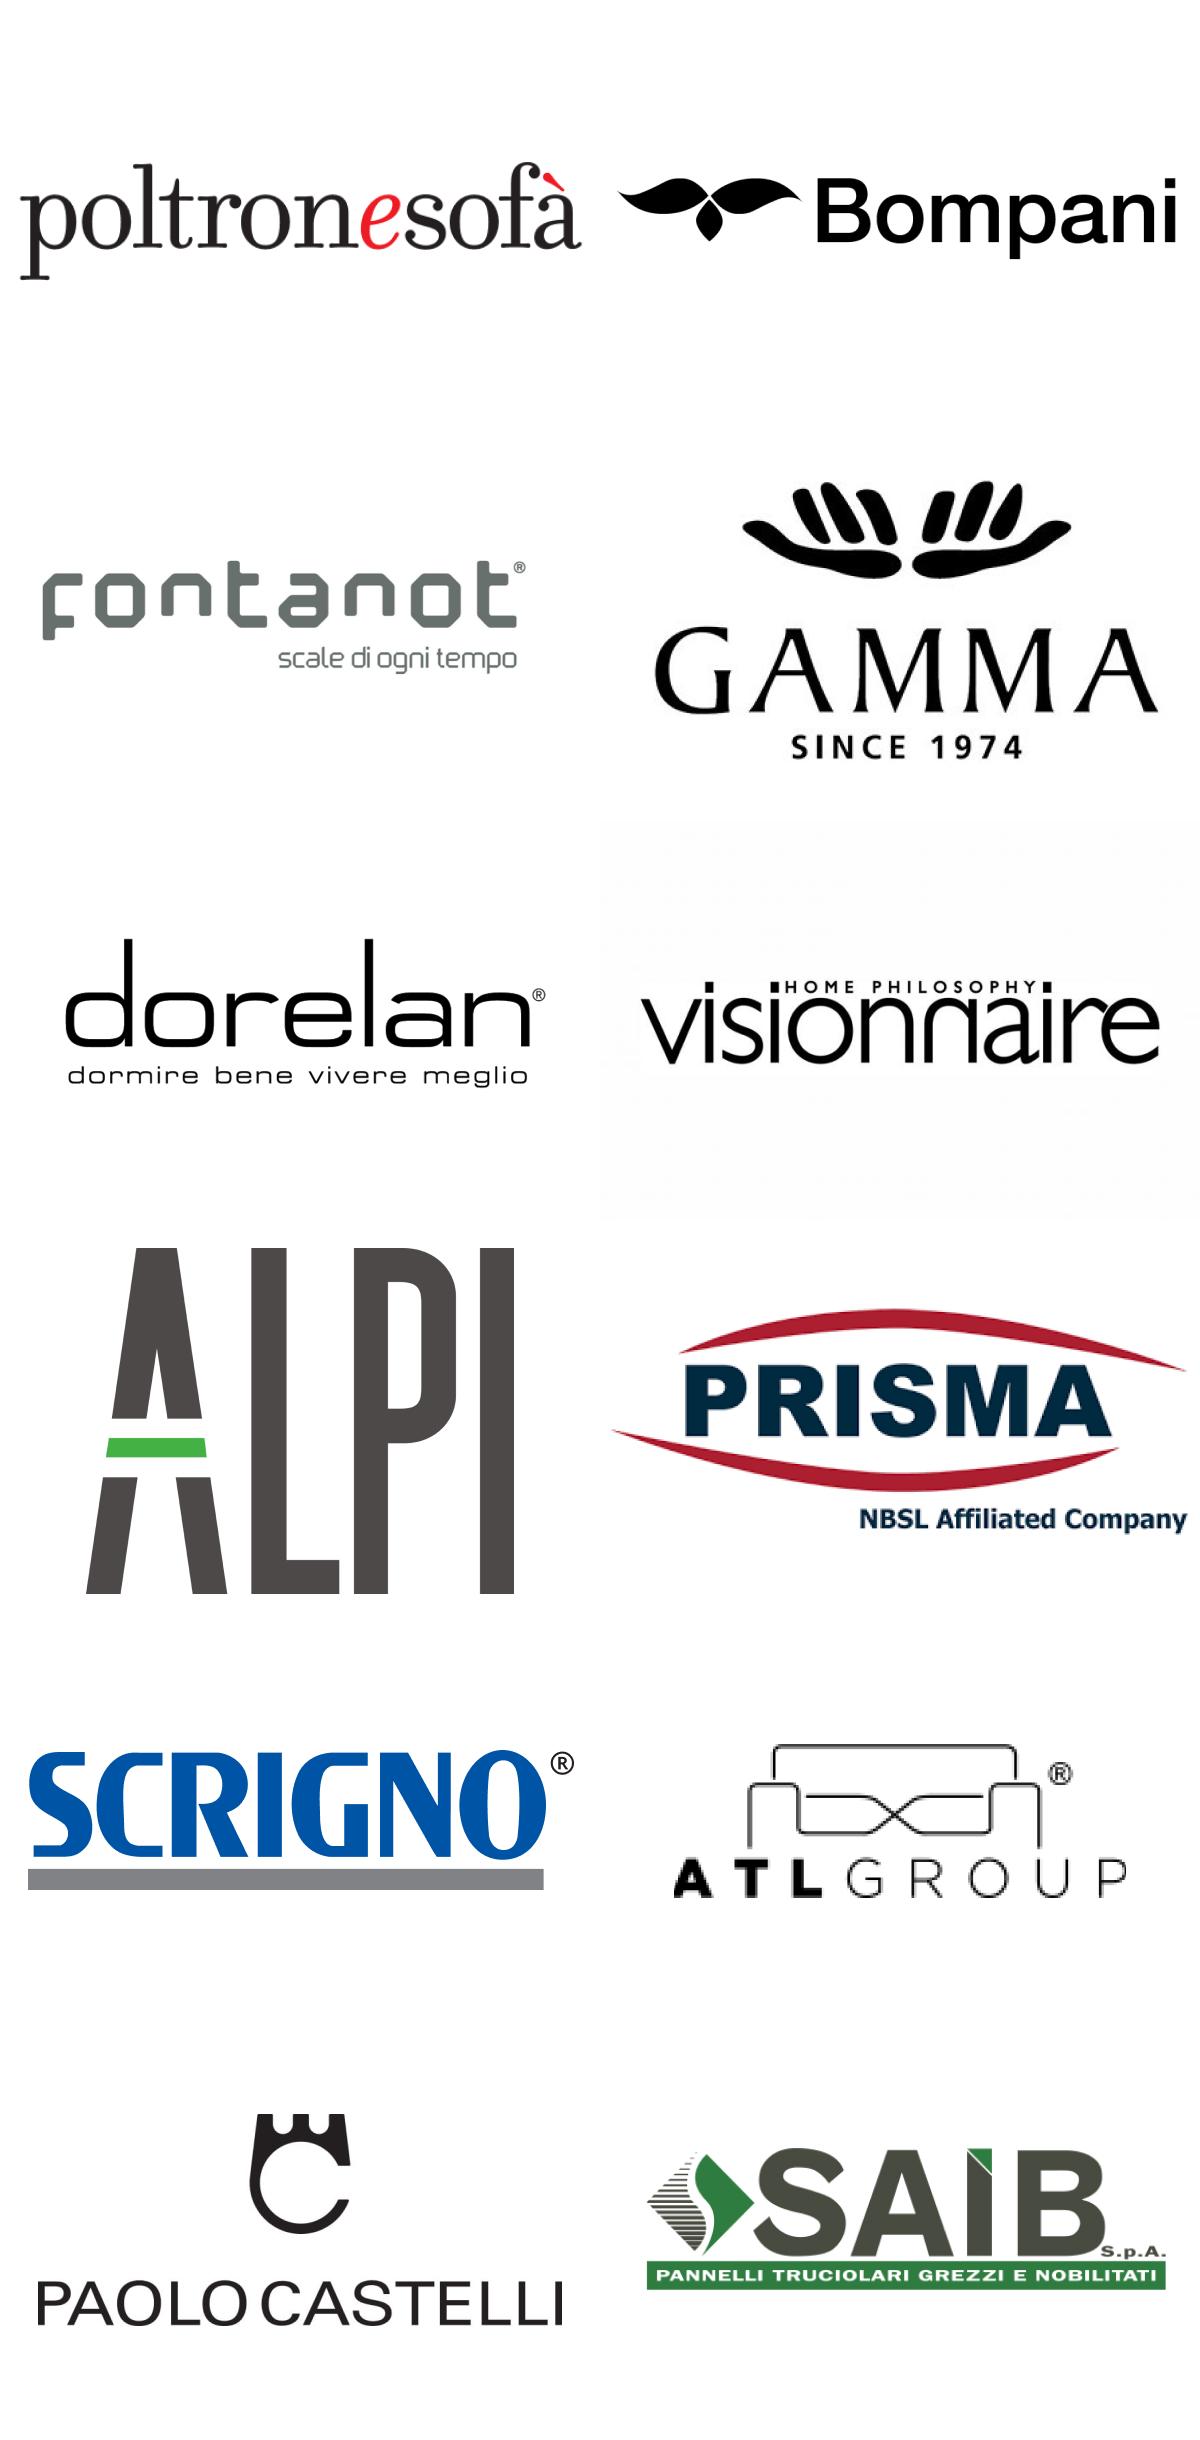 Immagini top brand colonna 3: Poltroneesofà, Bompani, Fontanot, Gamma, Dorelan, Visionnaire, Alpi, Prisma, Scrigno, Atlgroup, Paolo Castelli, Saib.